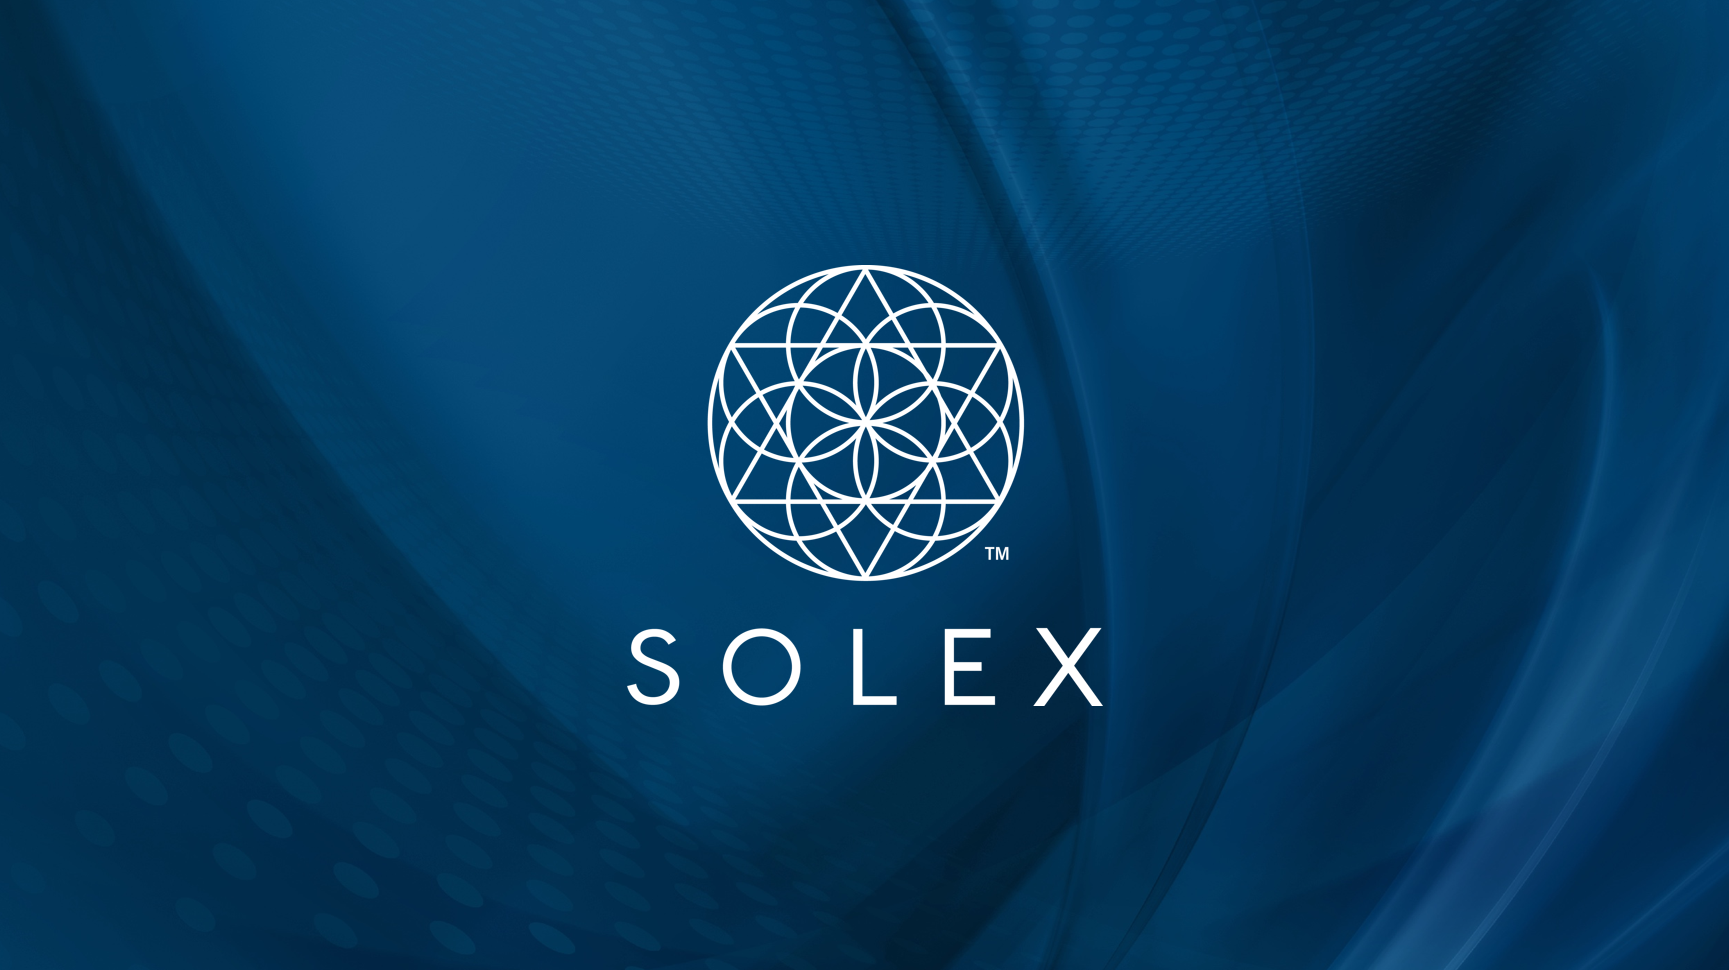 Solex Presentation - slide1.png